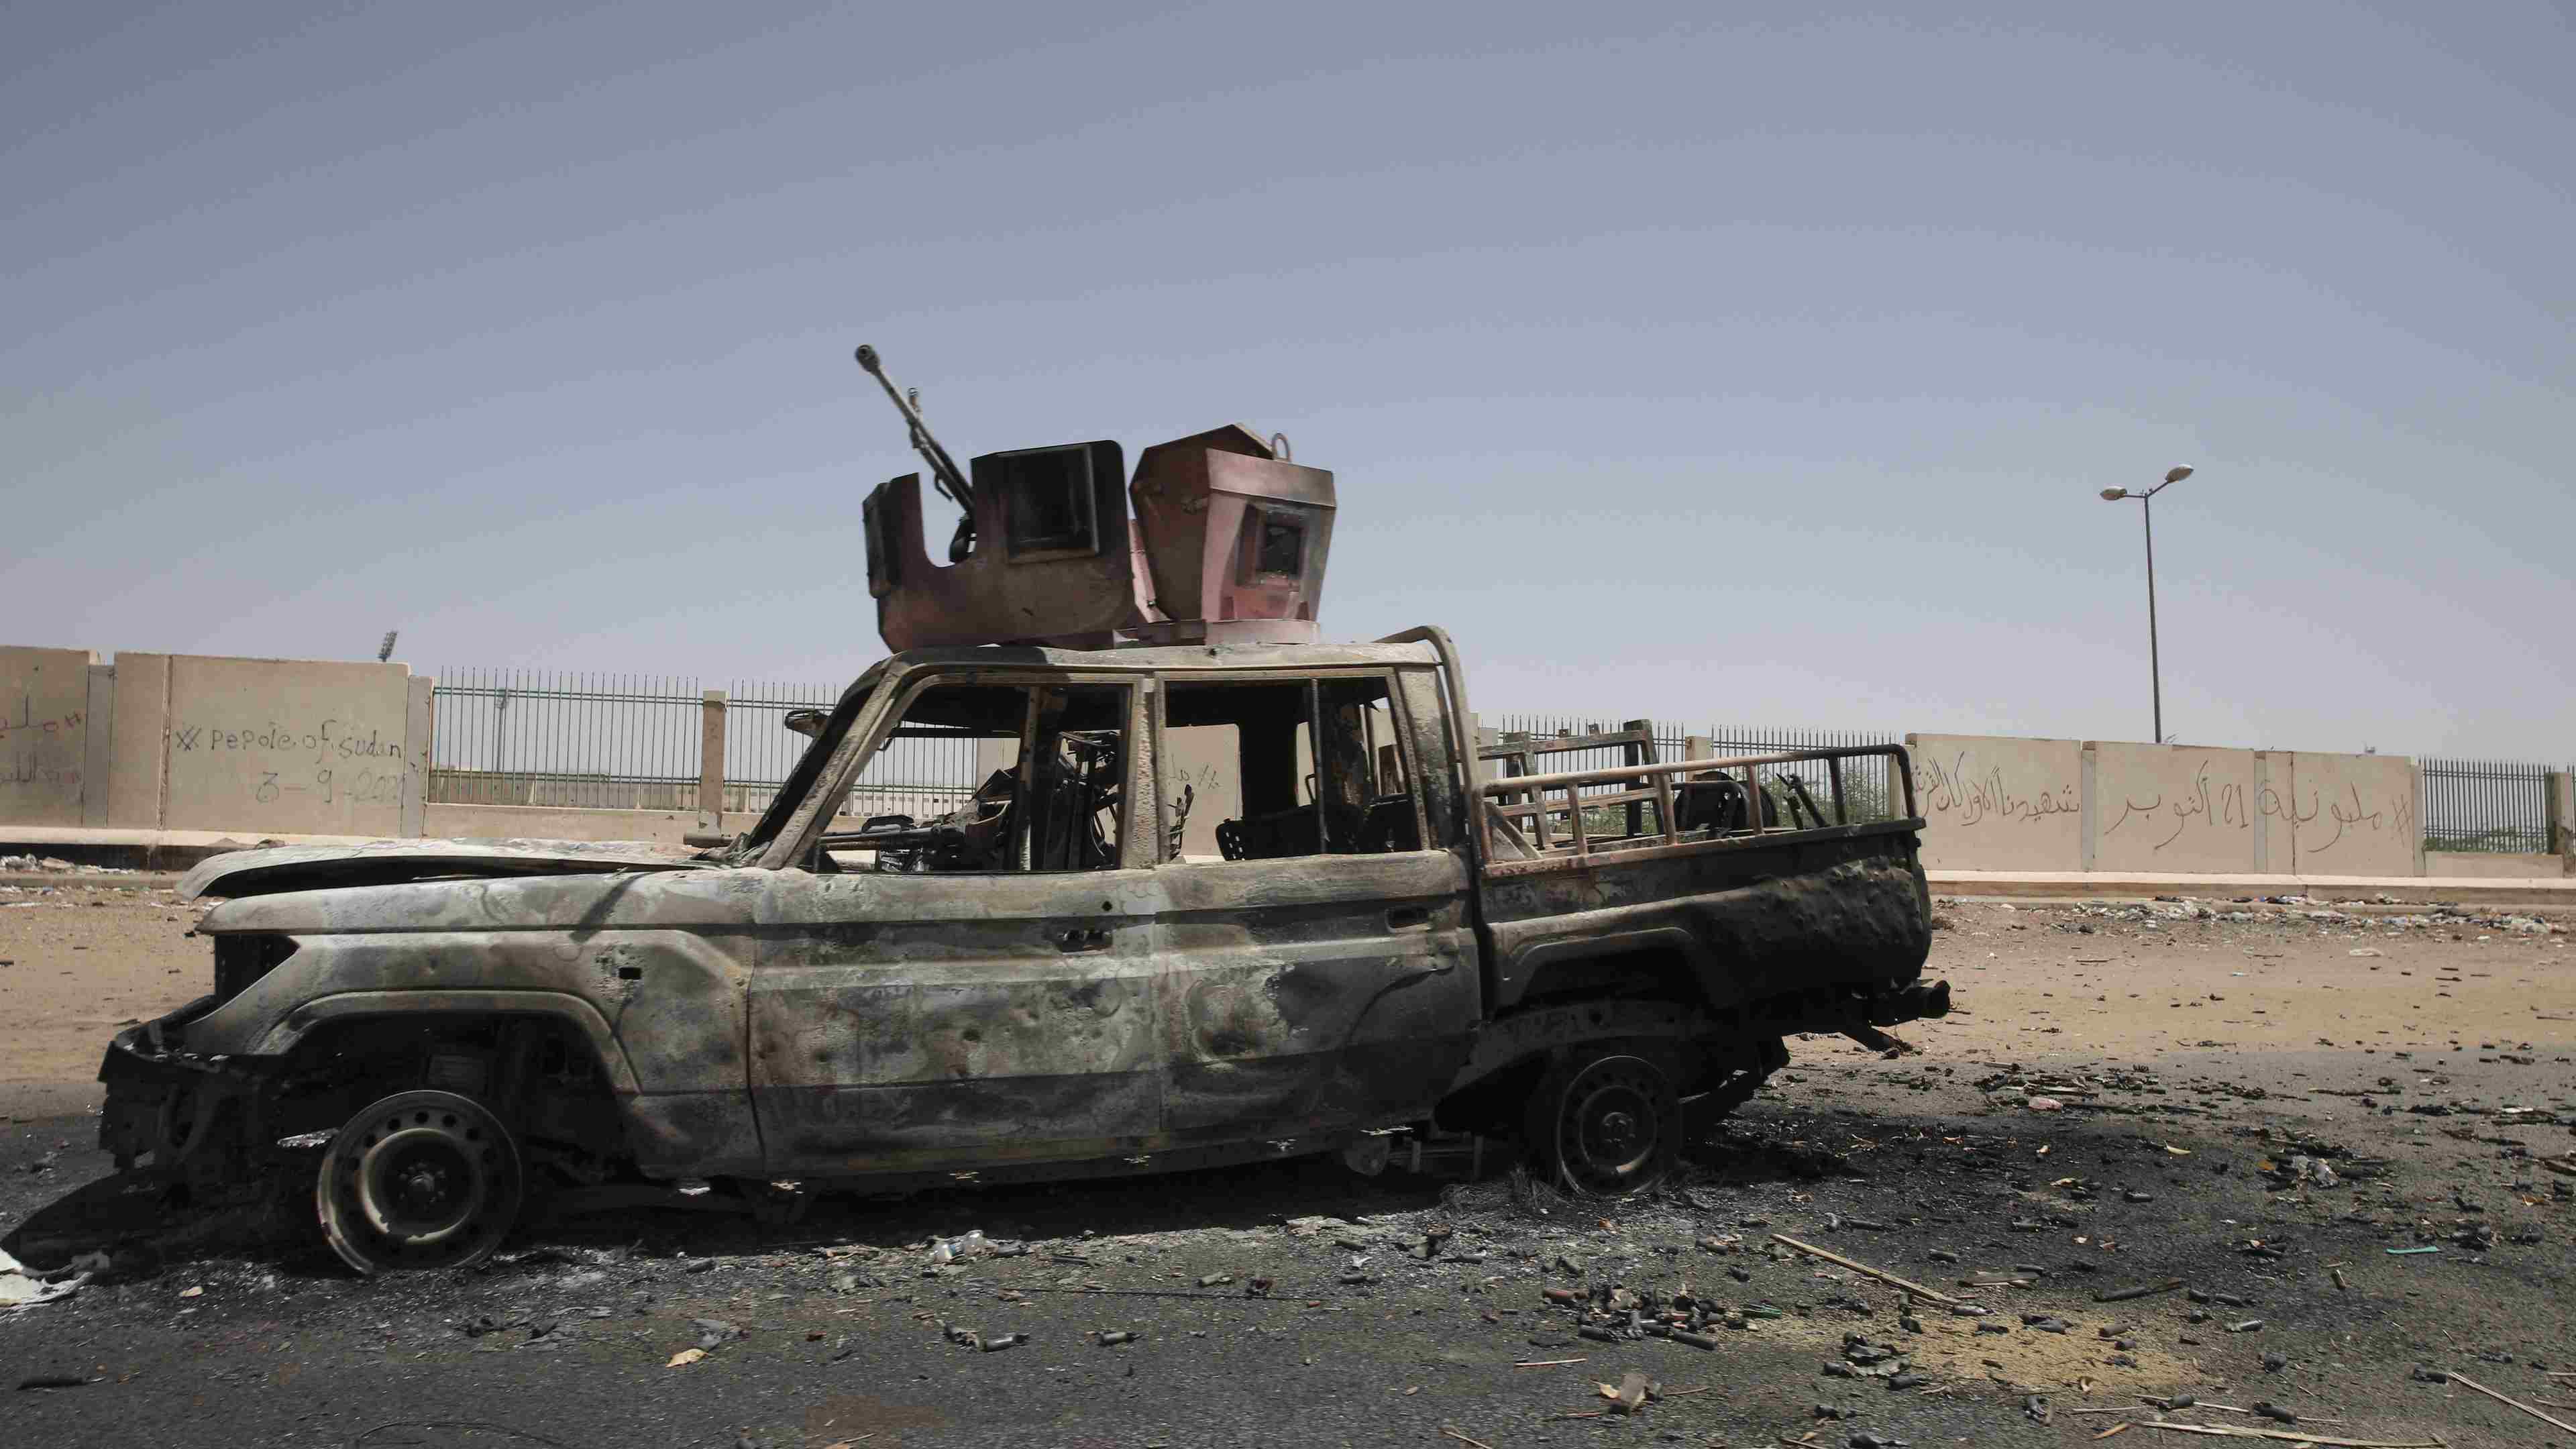 Véhicule militaire détruit dans le sud du Soudan